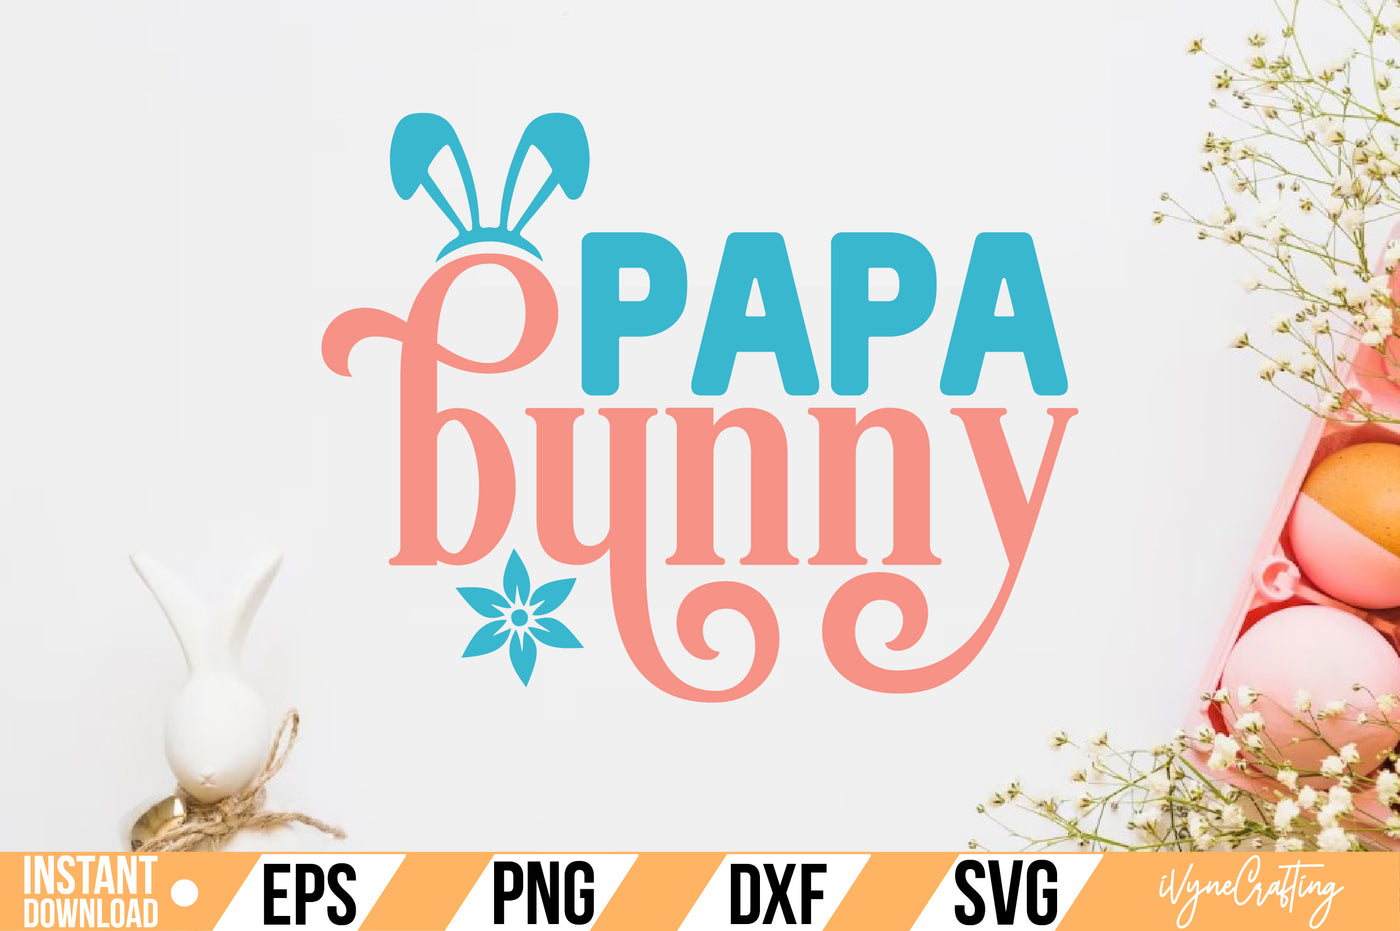 Papa bunny